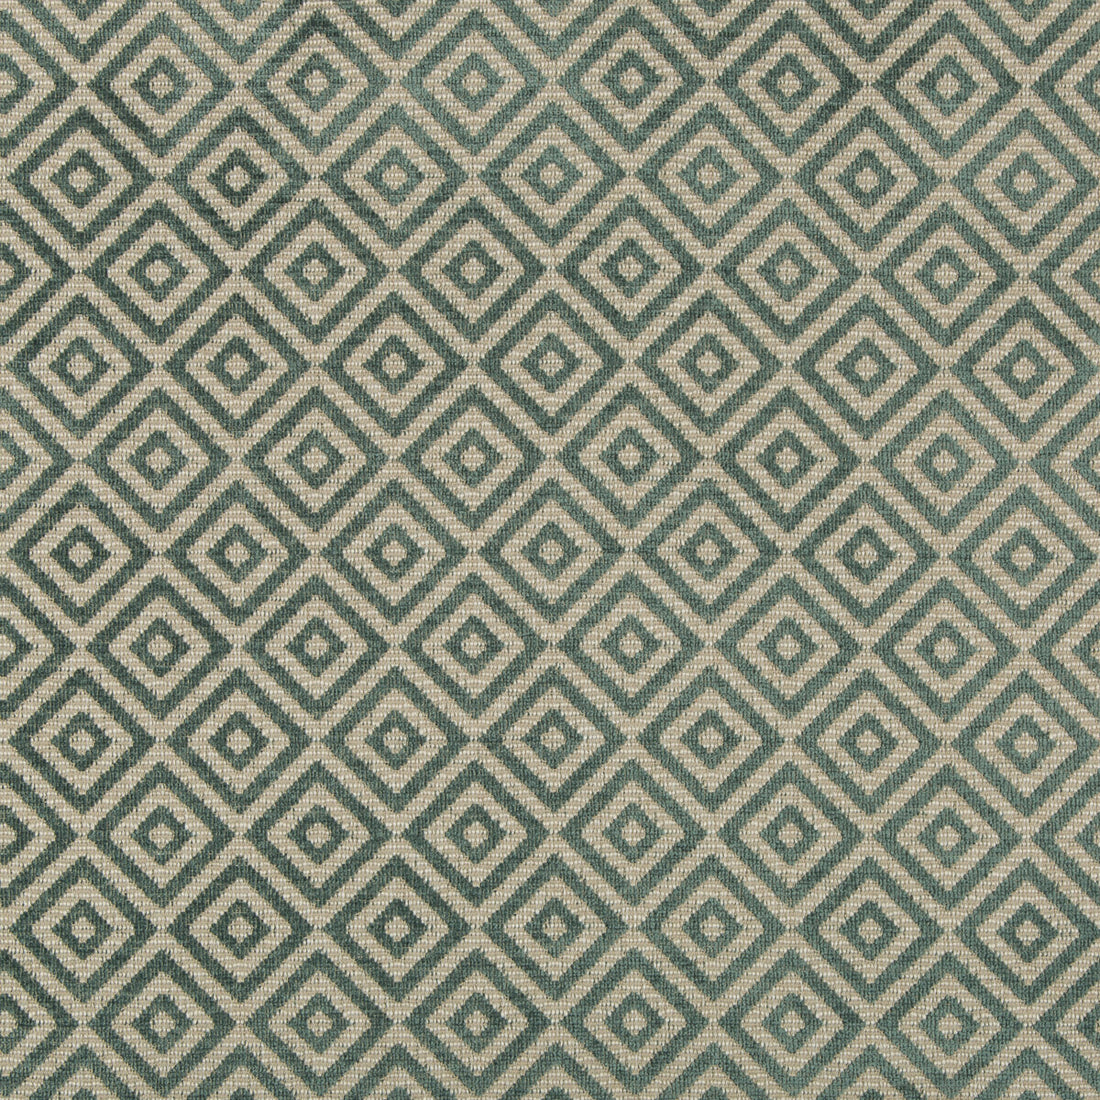 Kravet Design fabric in 35609-313 color - pattern 35609.313.0 - by Kravet Design